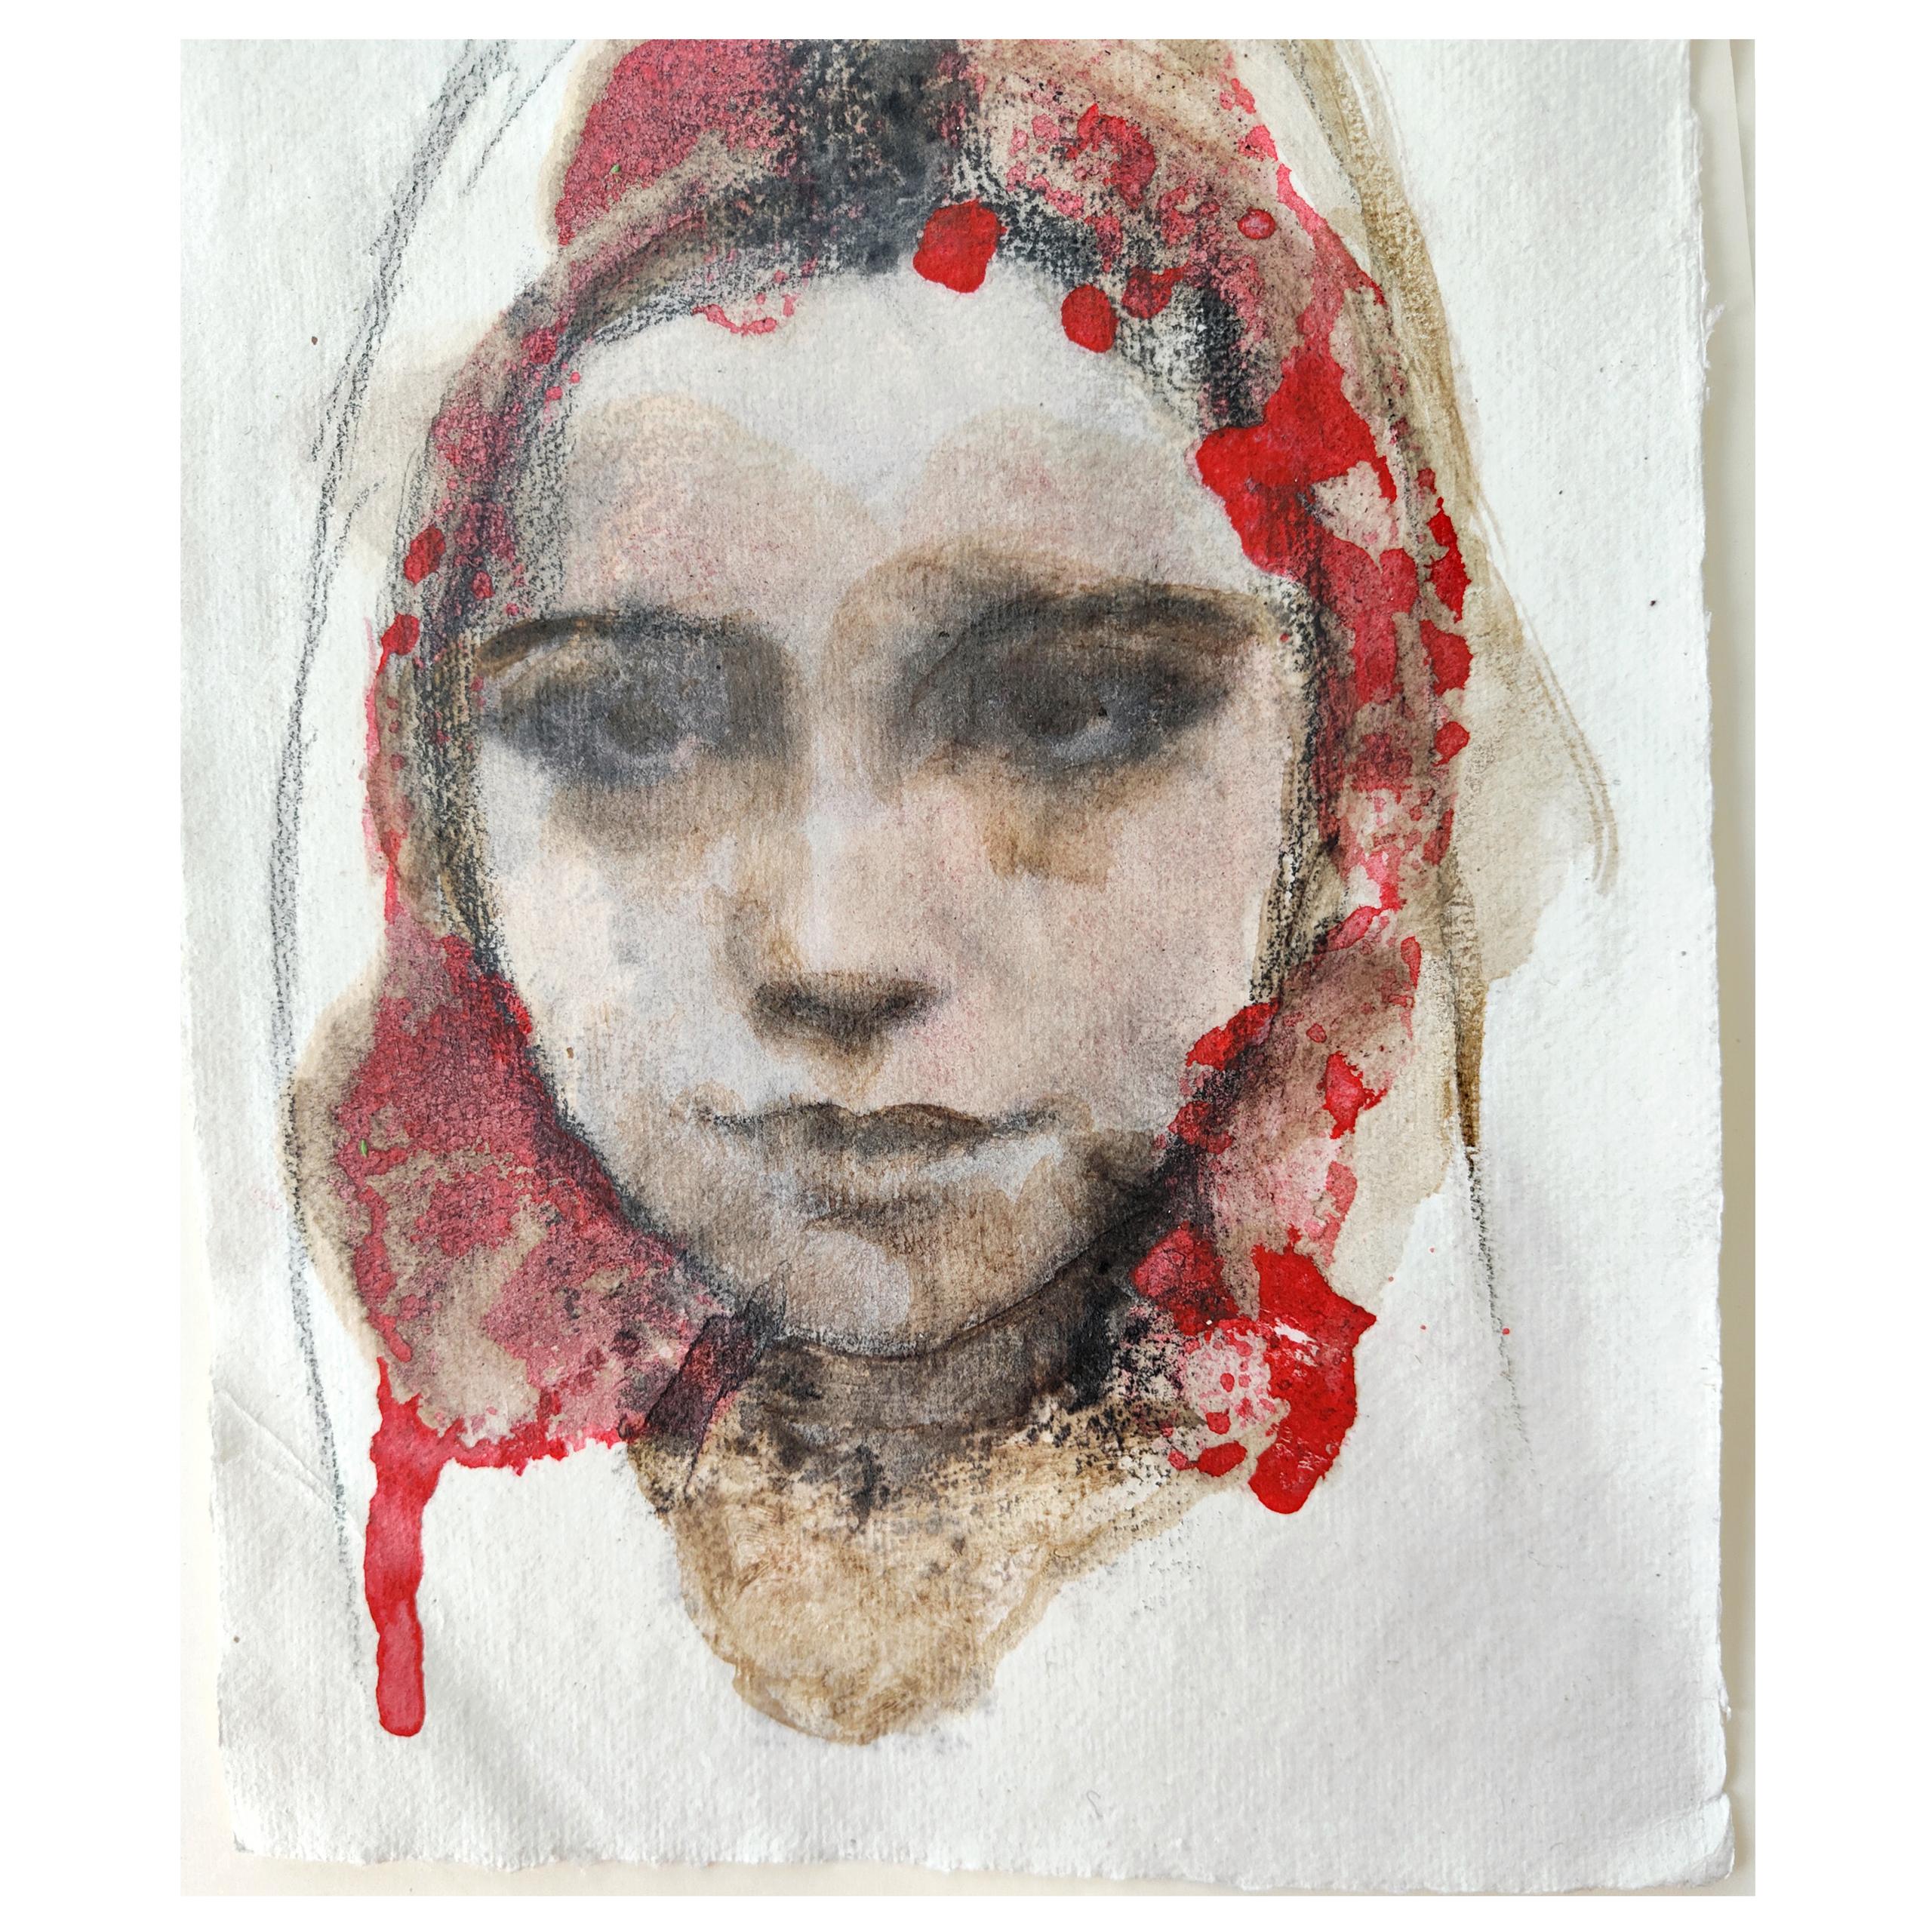 Simona Fedele Artista, piccole carte in tecnica mista disponibili, mostra d'arte, sanguigna, carboncino, olio e pastelli